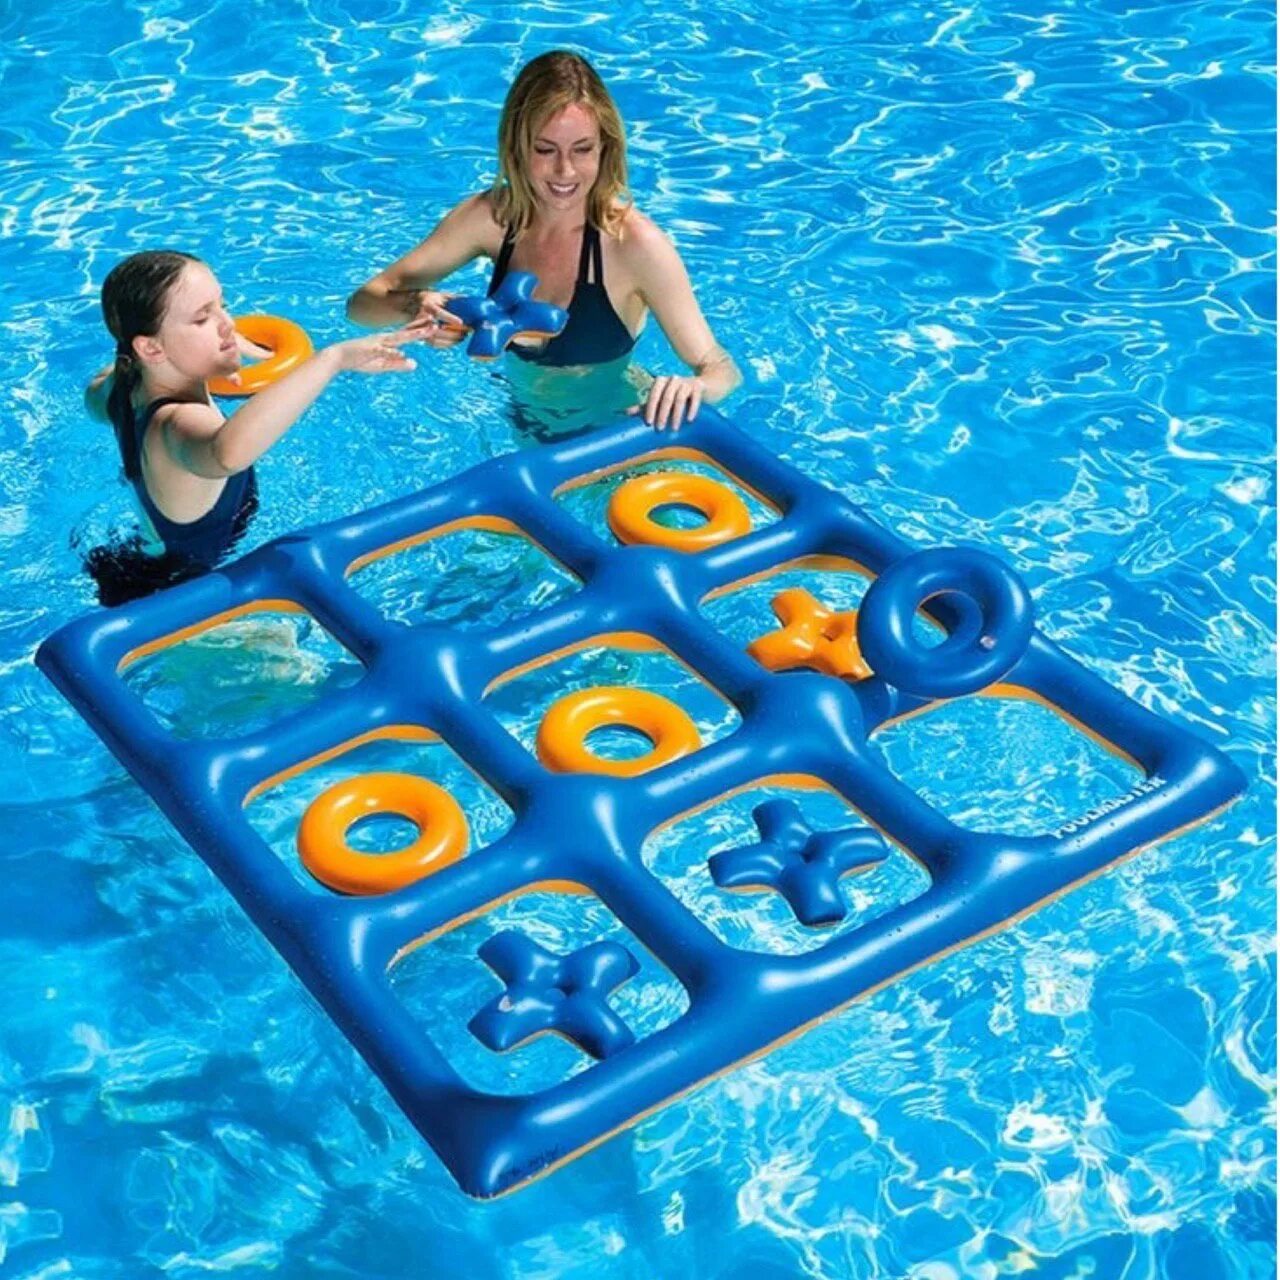 Во что можно поиграть дома девочкам. Инвентарь для купания. Игрушки для бассейна. Игры в бассейне для детей. Игрушки плавающие для бассейна.